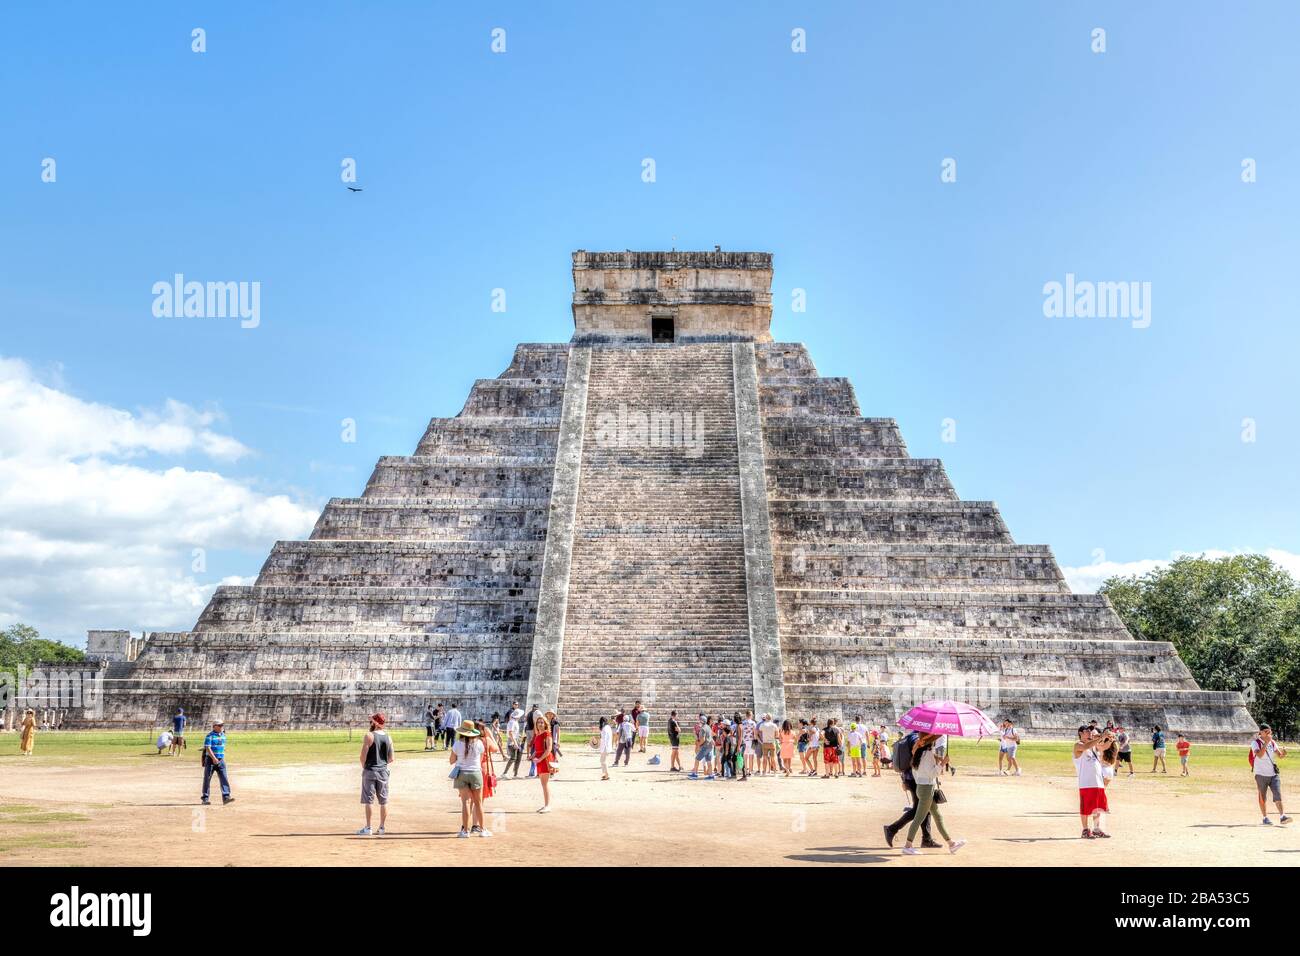 Chichen Itza, Mexiko - 23. Dezember 2019: Touristen besuchen die berühmte Kukulcan Pyramide in Chichen Itza auf der Halbinsel Yucatan in Mexiko. EINE UNESCO-WELT H Stockfoto